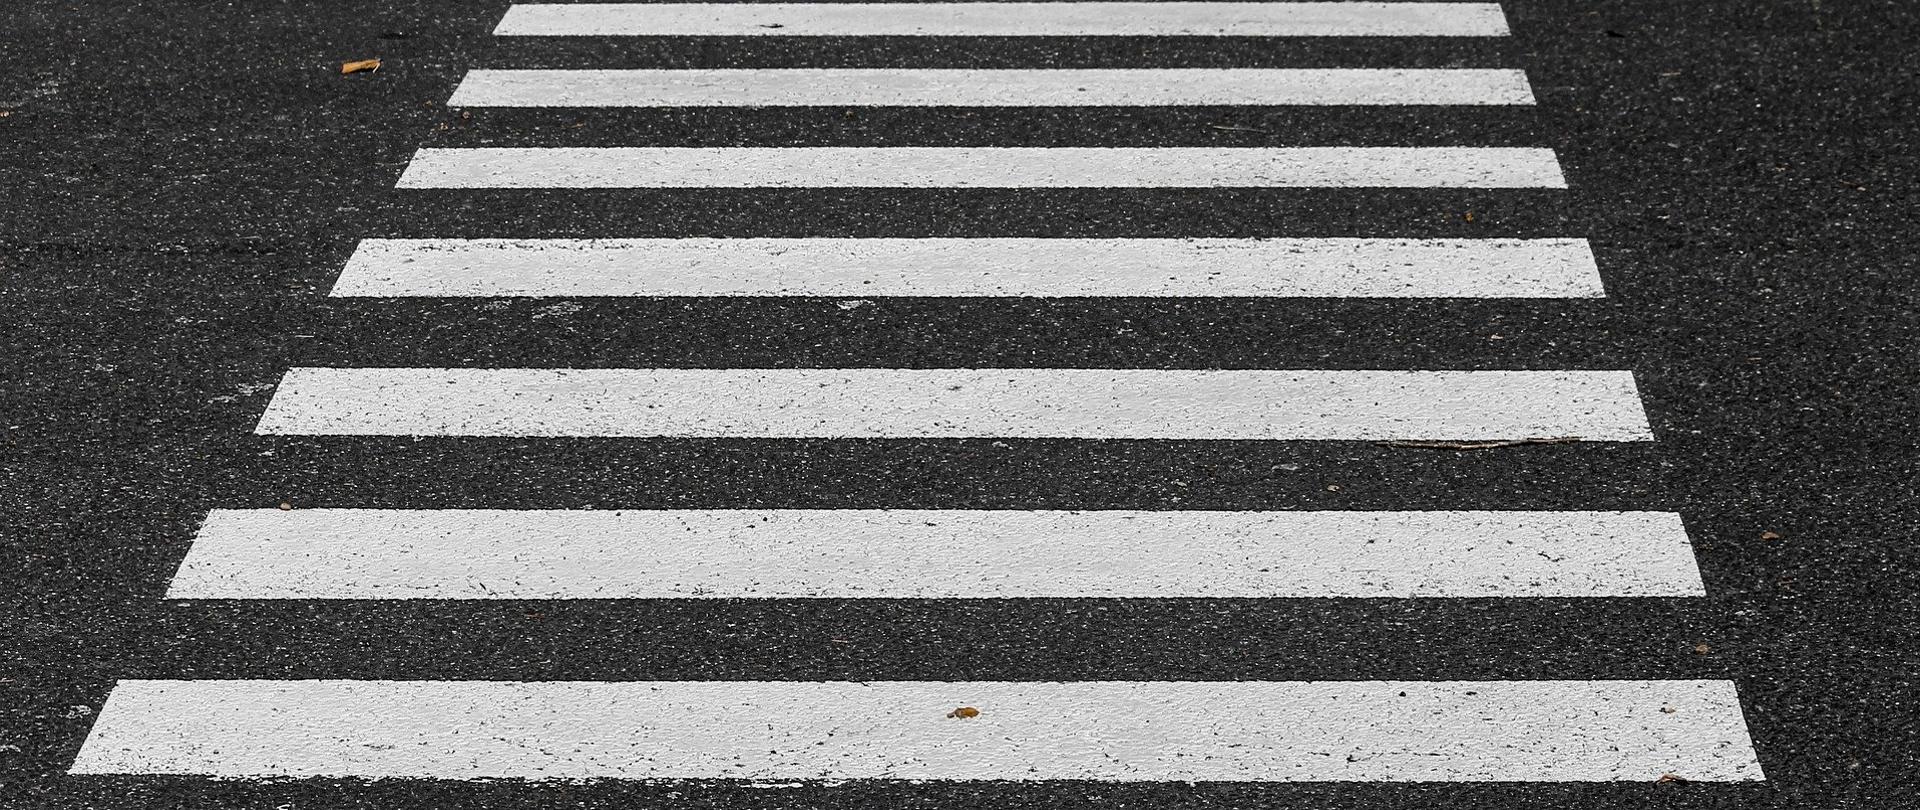 Przejście dla pieszych - ilustracja pixabay. Na zdjęciu kawałek jezdni oraz pasy - zebra.